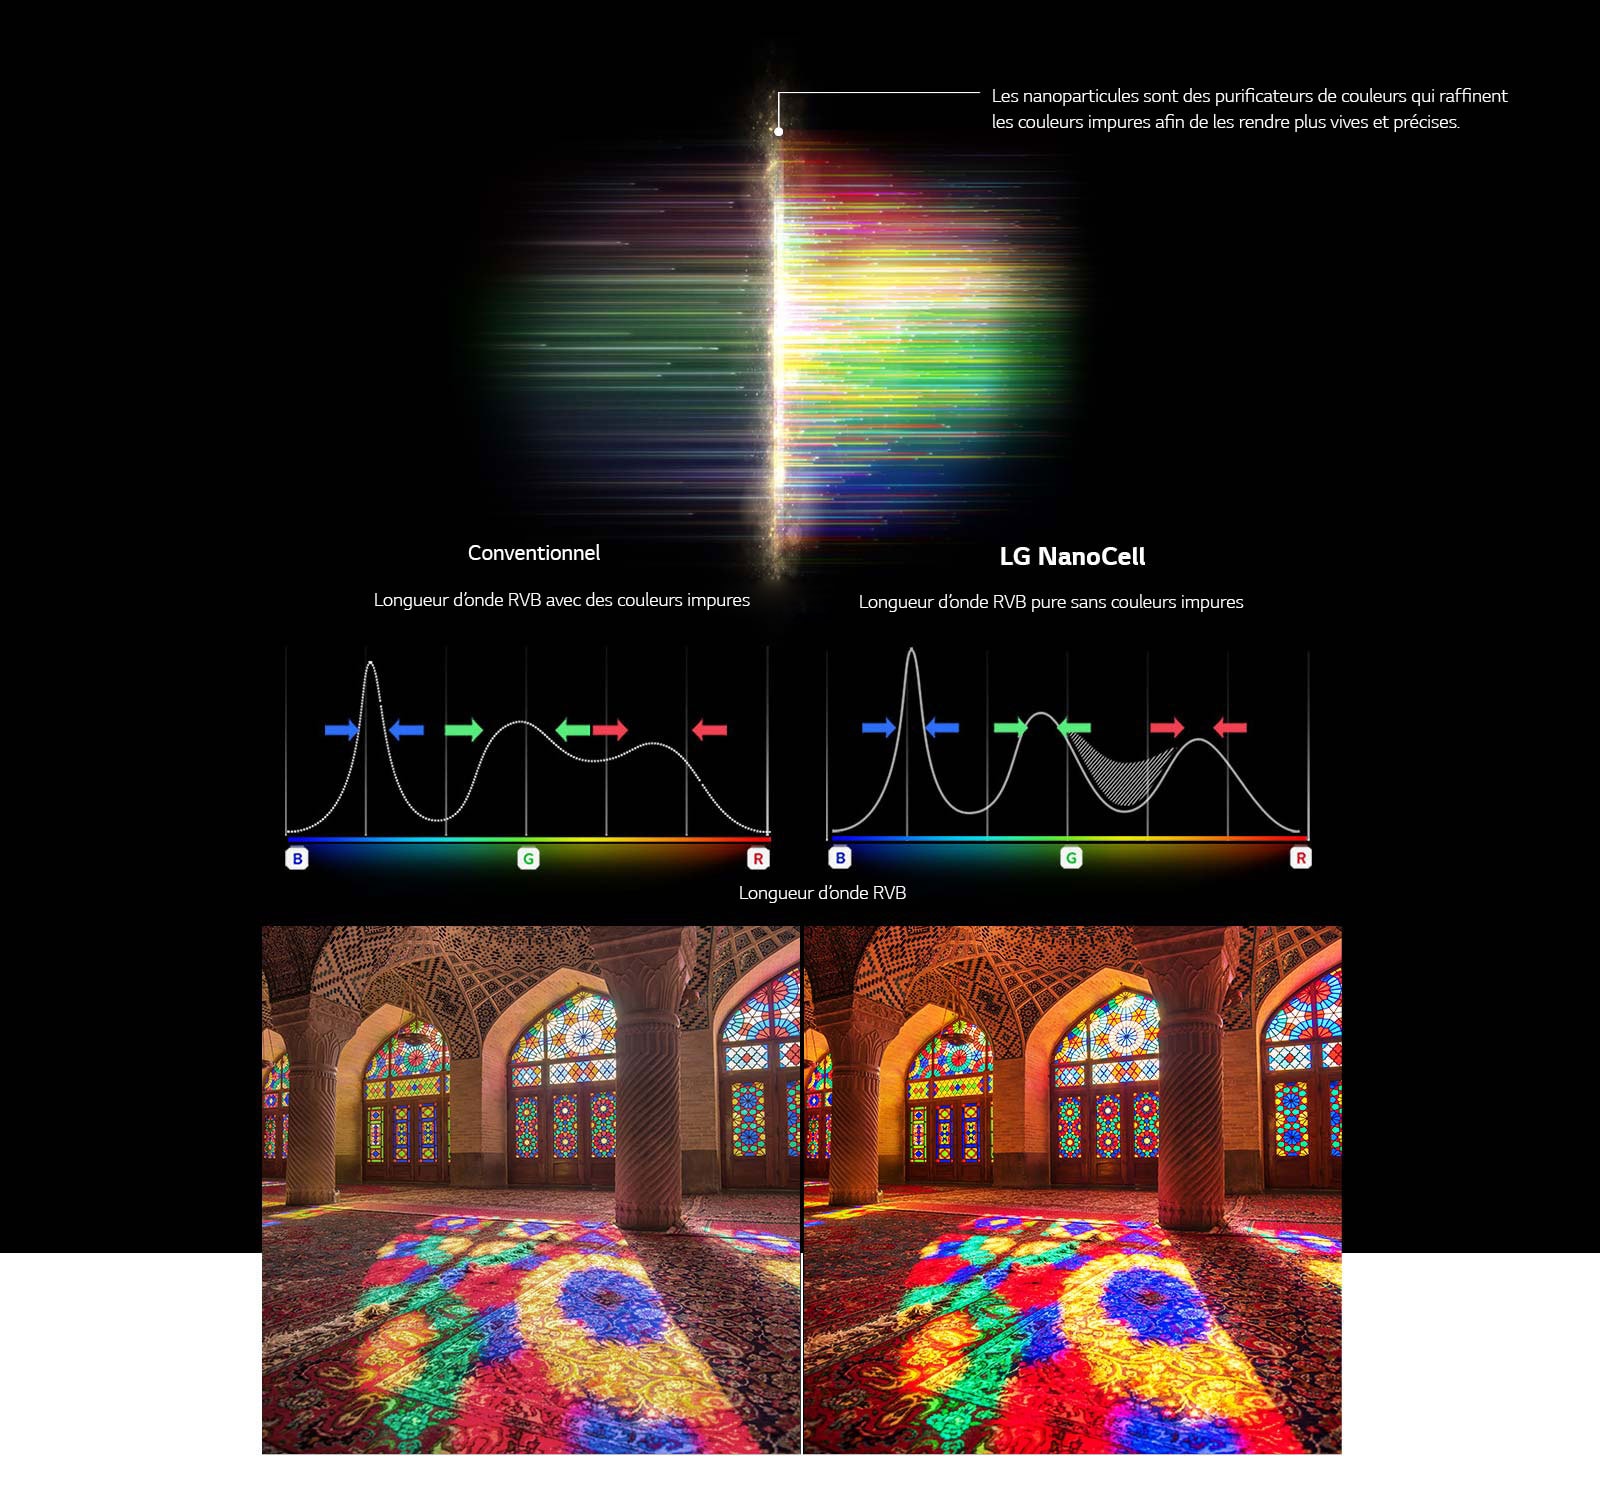 Ce graphique du spectre RVB montre la différence entre des images normales et des images avec des couleurs ternes nettoyées et compare la solidité des couleurs entre la technologie normale et la technologie NanoCell.